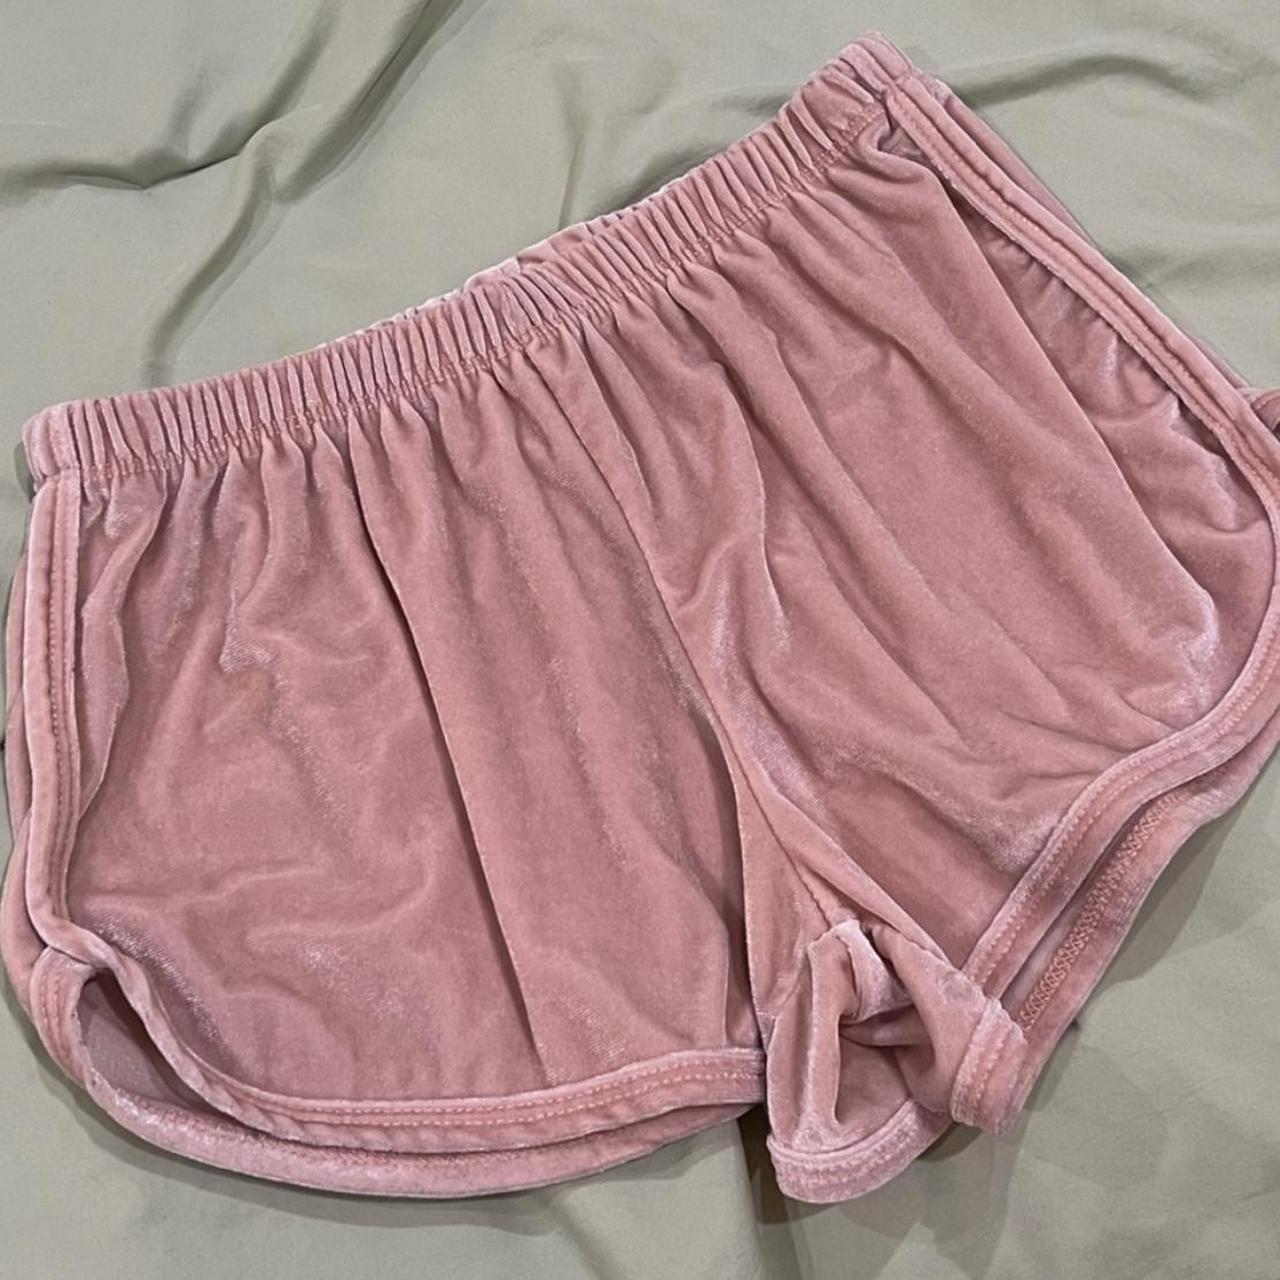 BRANDY MELVILLE - red shorts -super comfy - Depop